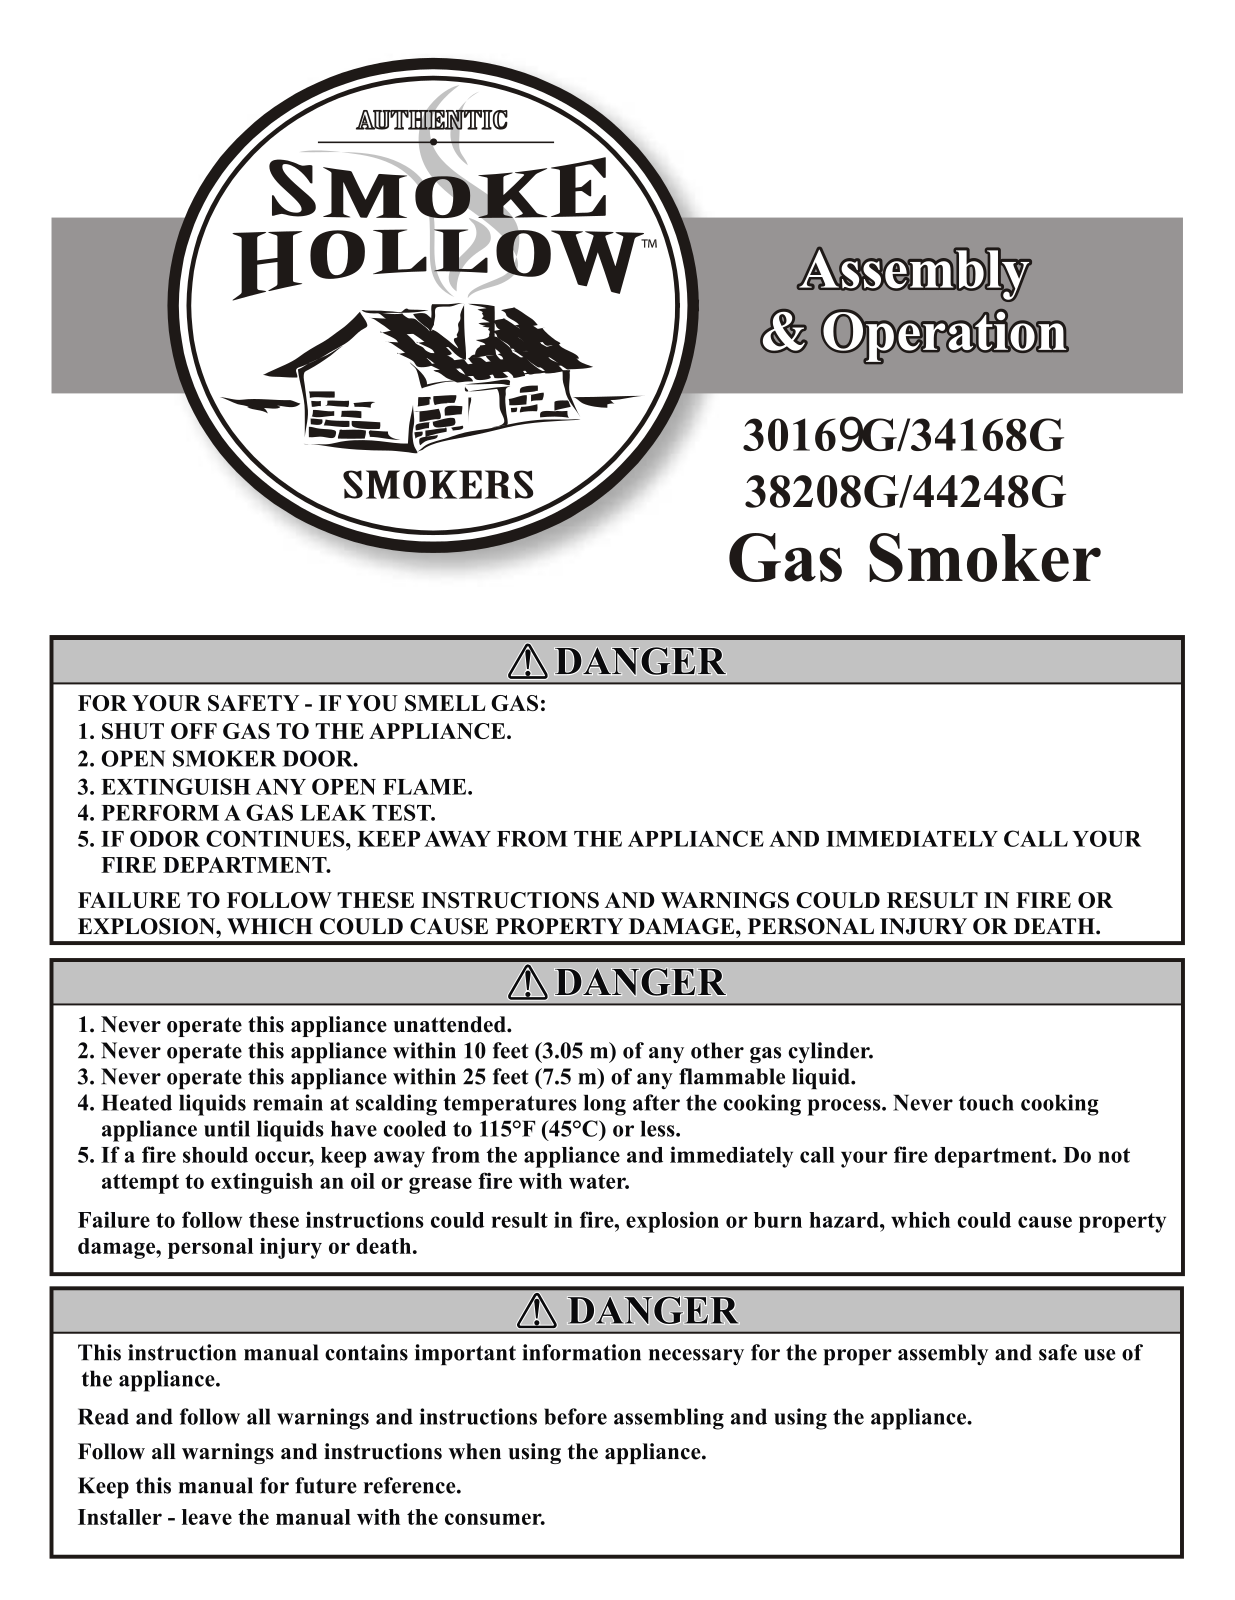 Smoke Hollow 44248g, 34168g, 38208g Owner's Manual